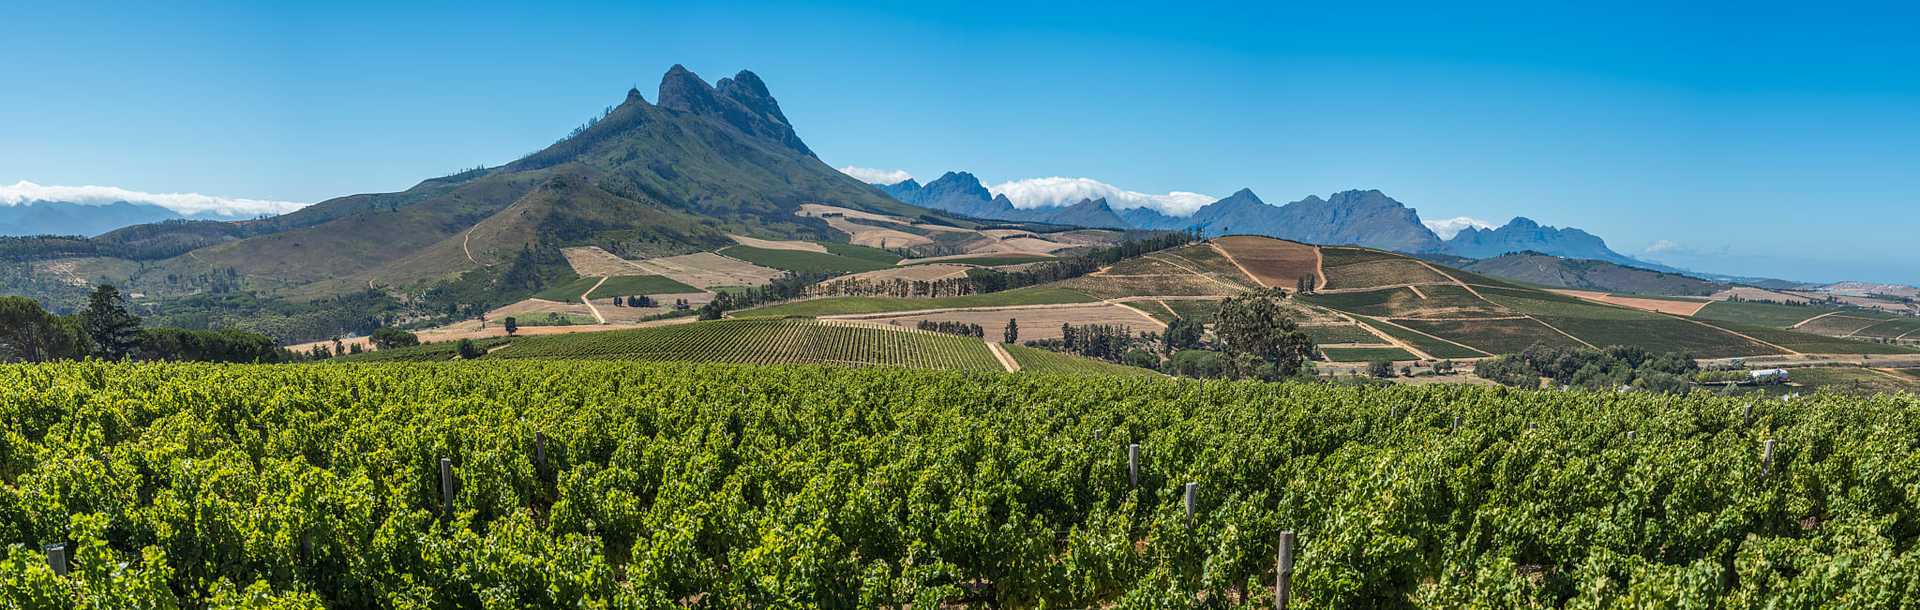 Cape winelands, wine growing region in South Africa.